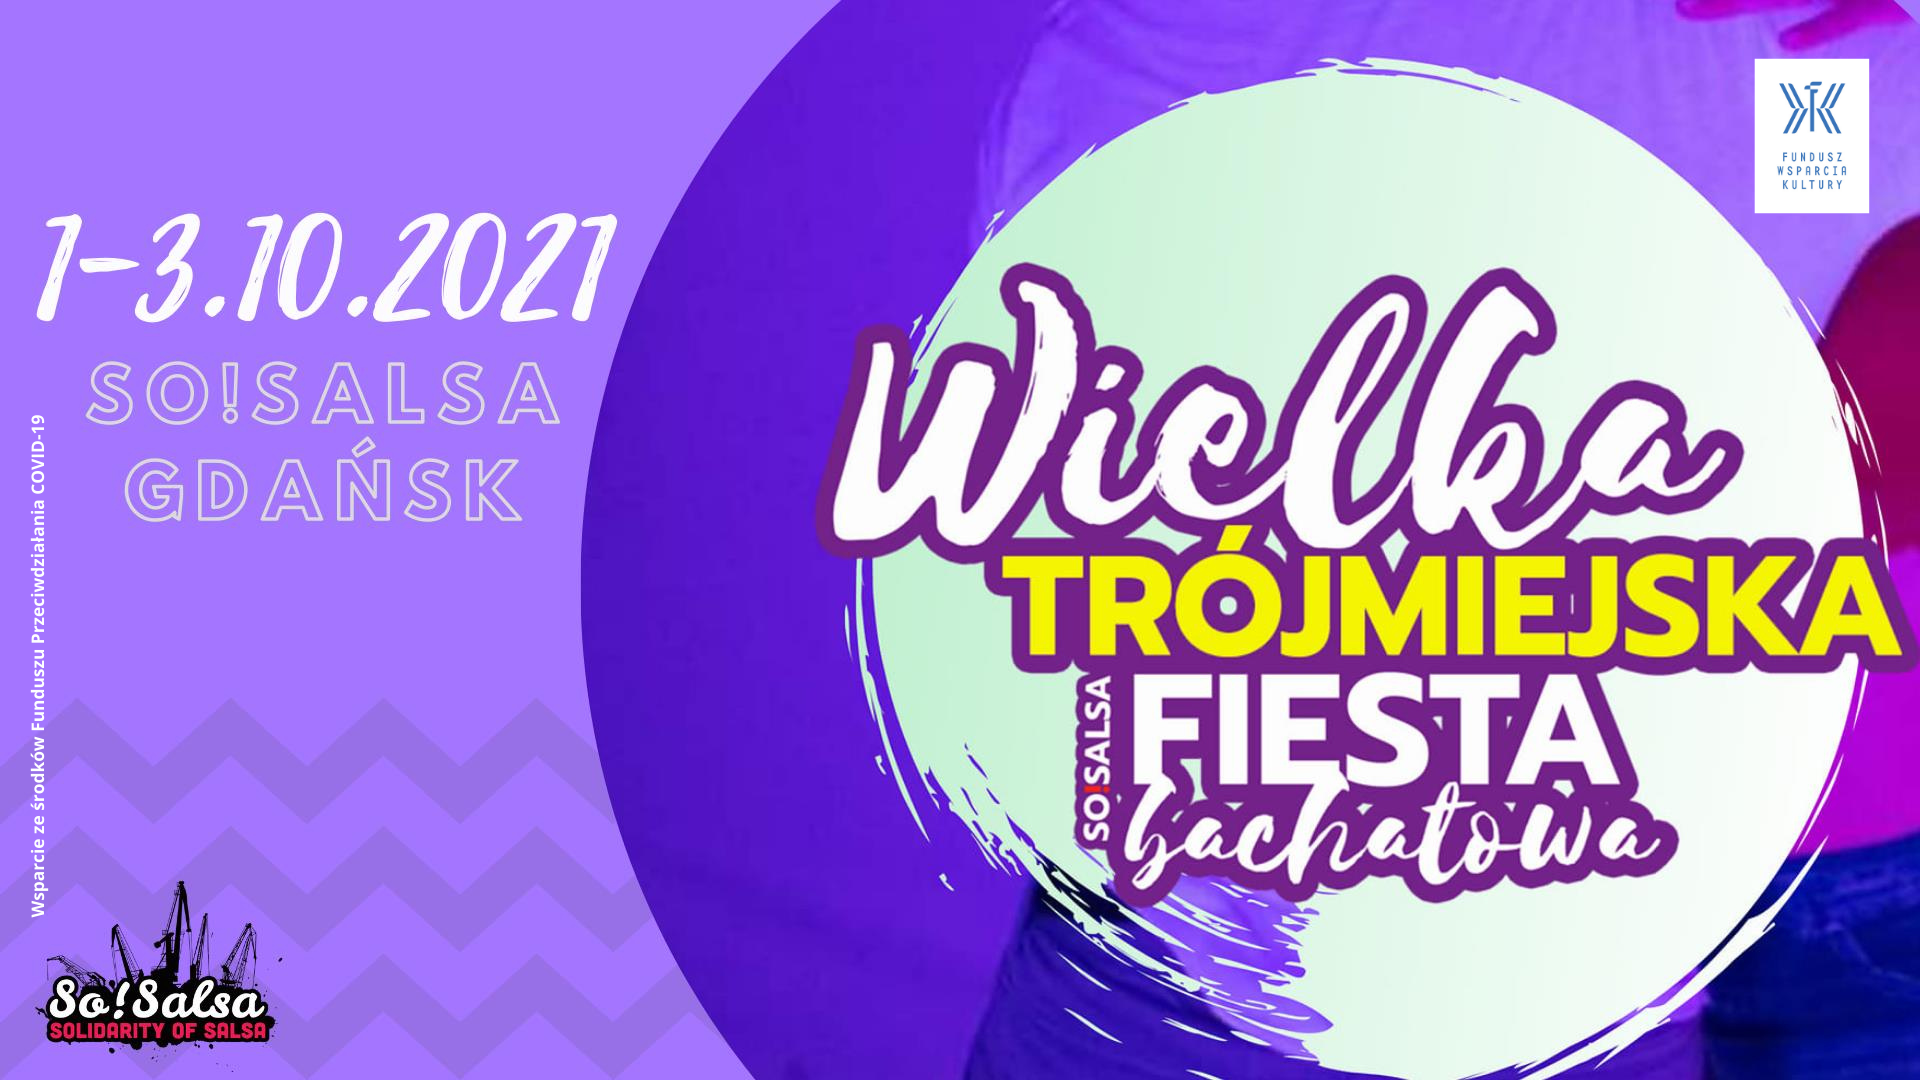 Wielka Trójmiejska Fiesta Bachatowa 2021